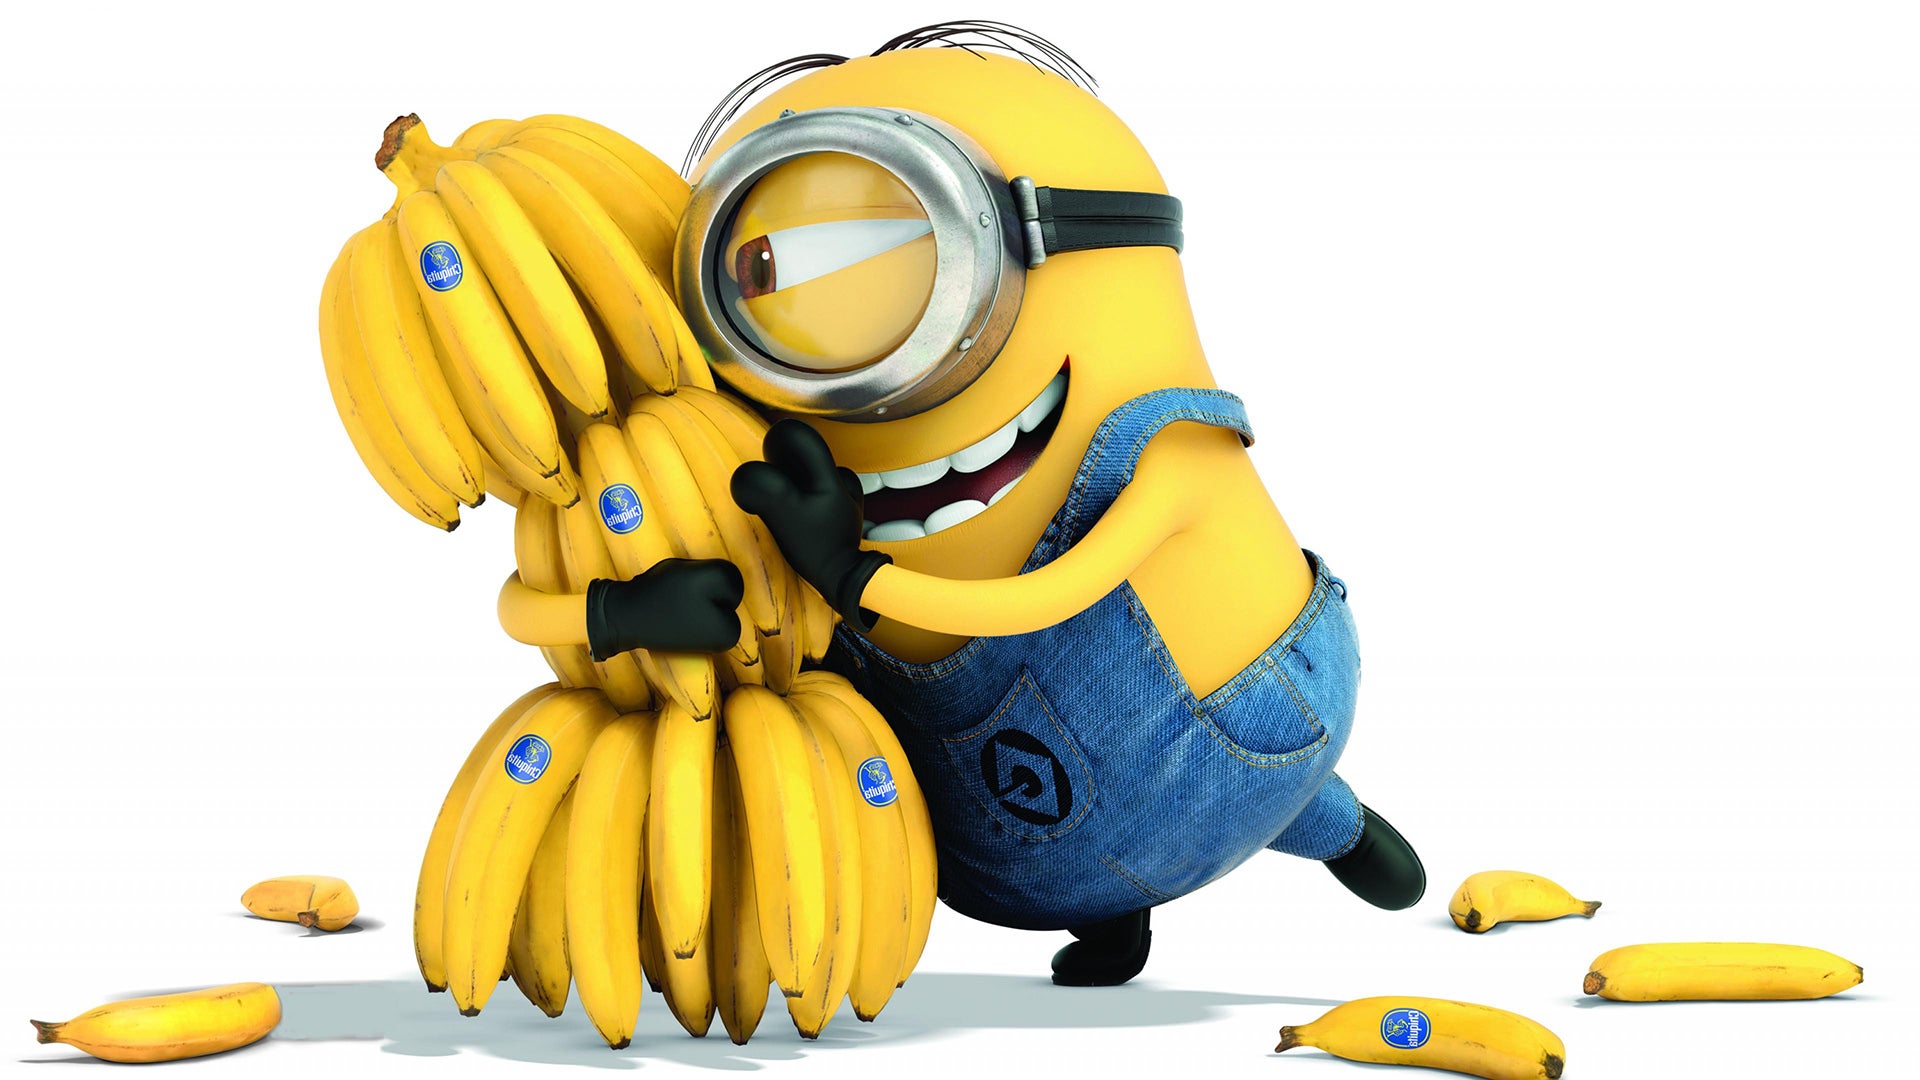 点击游戏《香蕉》成Steam平台最受欢迎游戏记录第9名 《博德之门3》